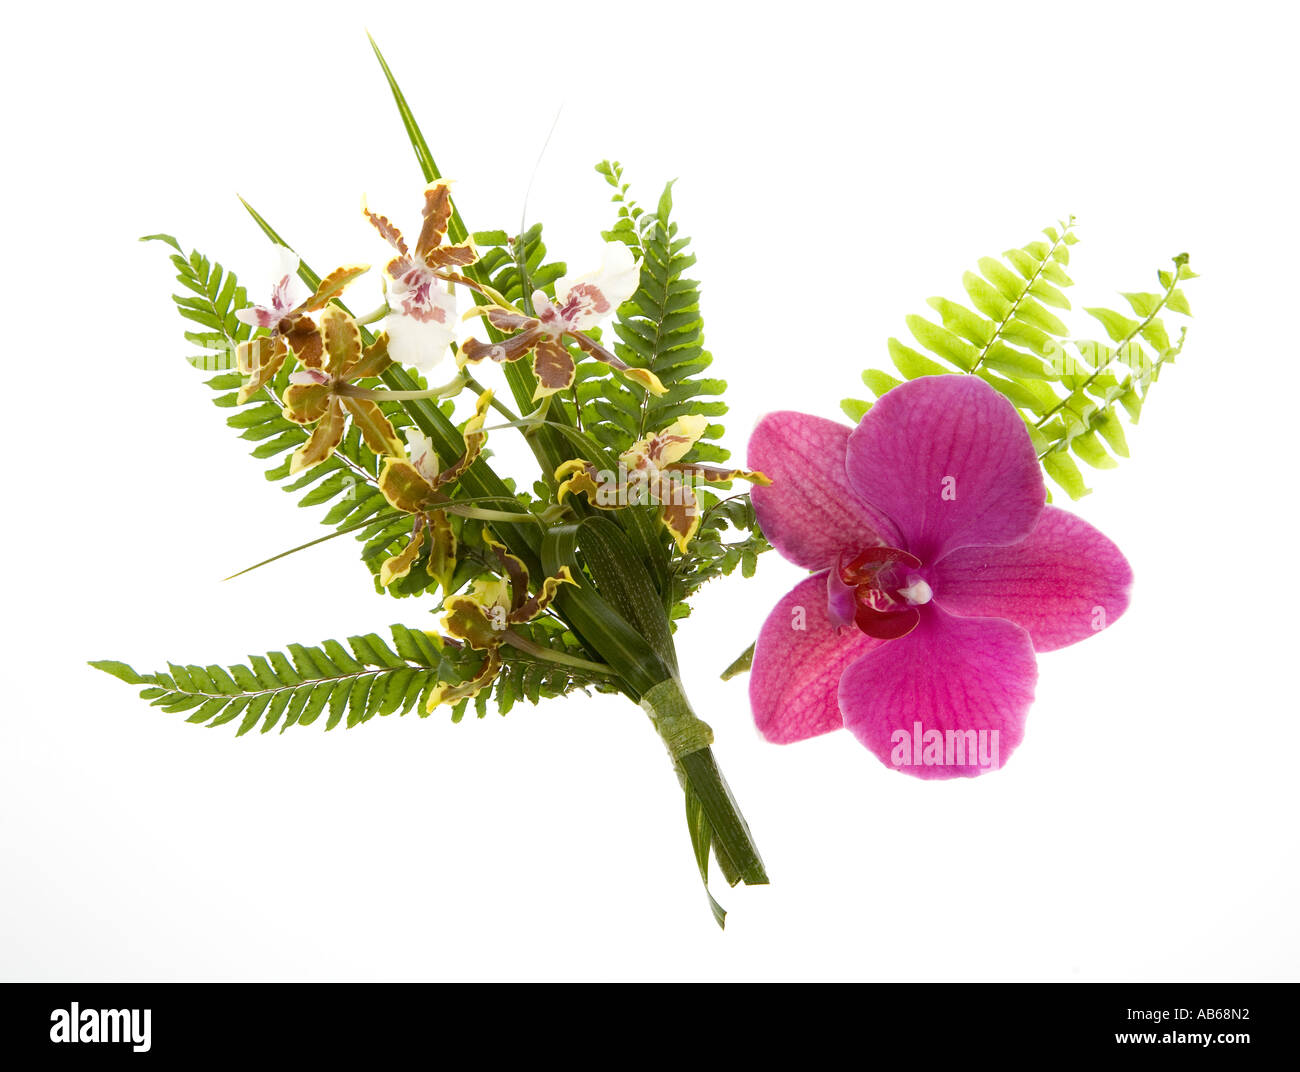 Orchideen in Corsage und Knopfloch Präsentationen mit Farn Hintergründe für Wales UK Hochzeitsgäste gemacht Stockfoto